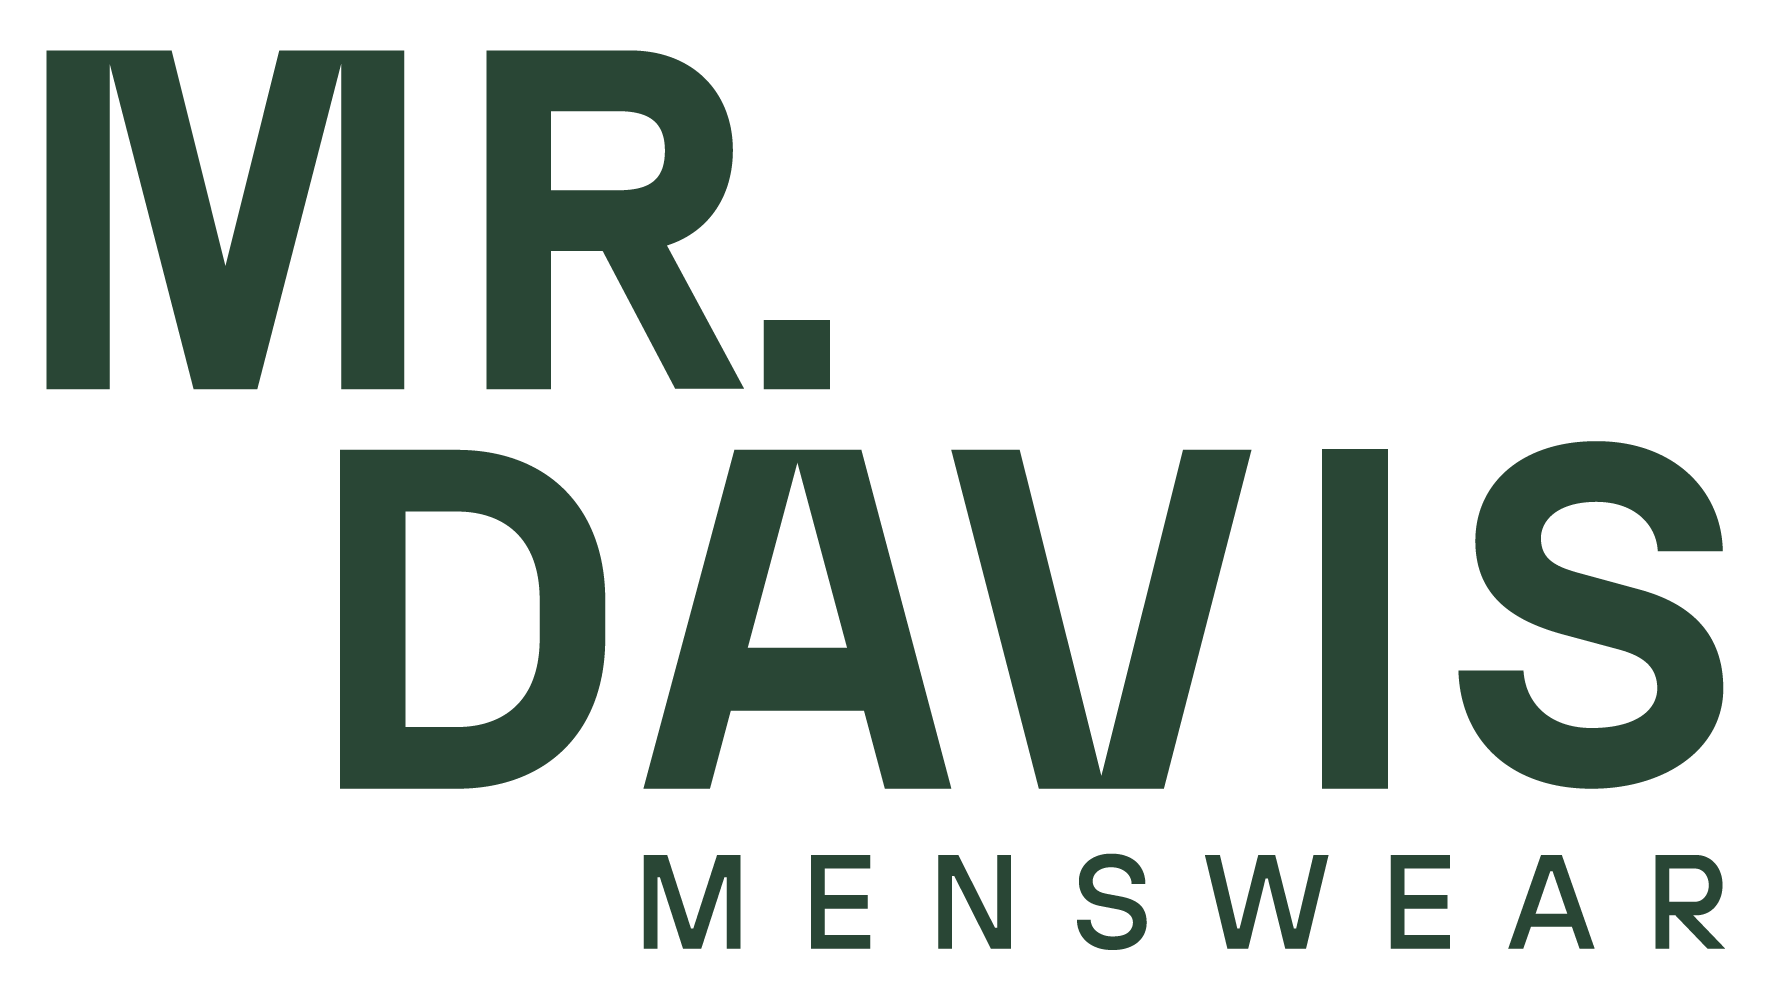 Riwaj Menswear Official Online Store – Riwajmens-wear